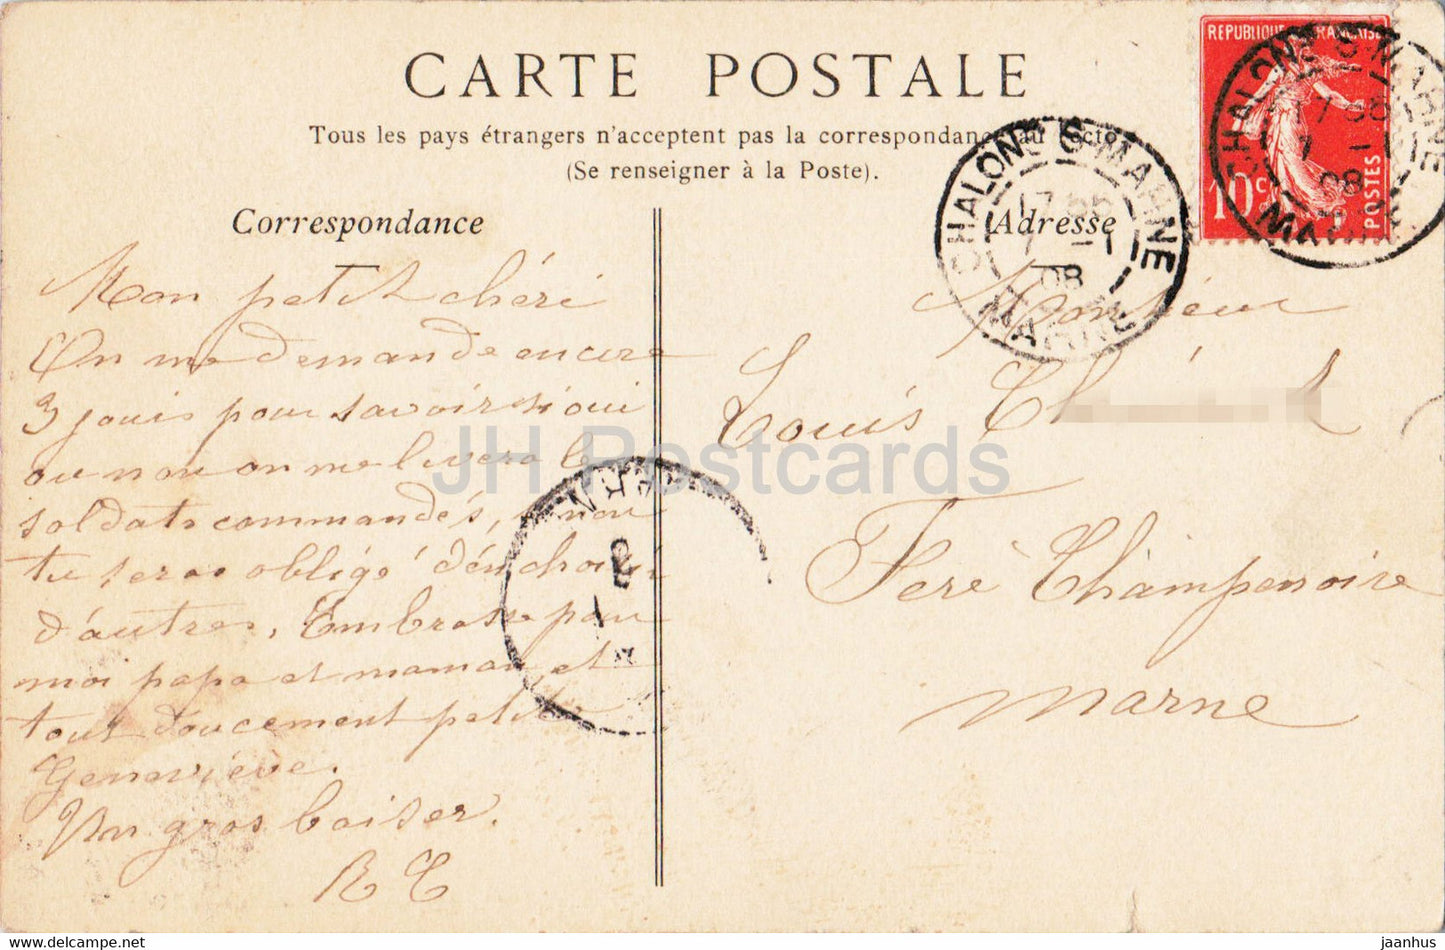 Chalons sur Marne - La Place de la Republique et la Fontaine - 62 - old postcard - 1908 - France - used